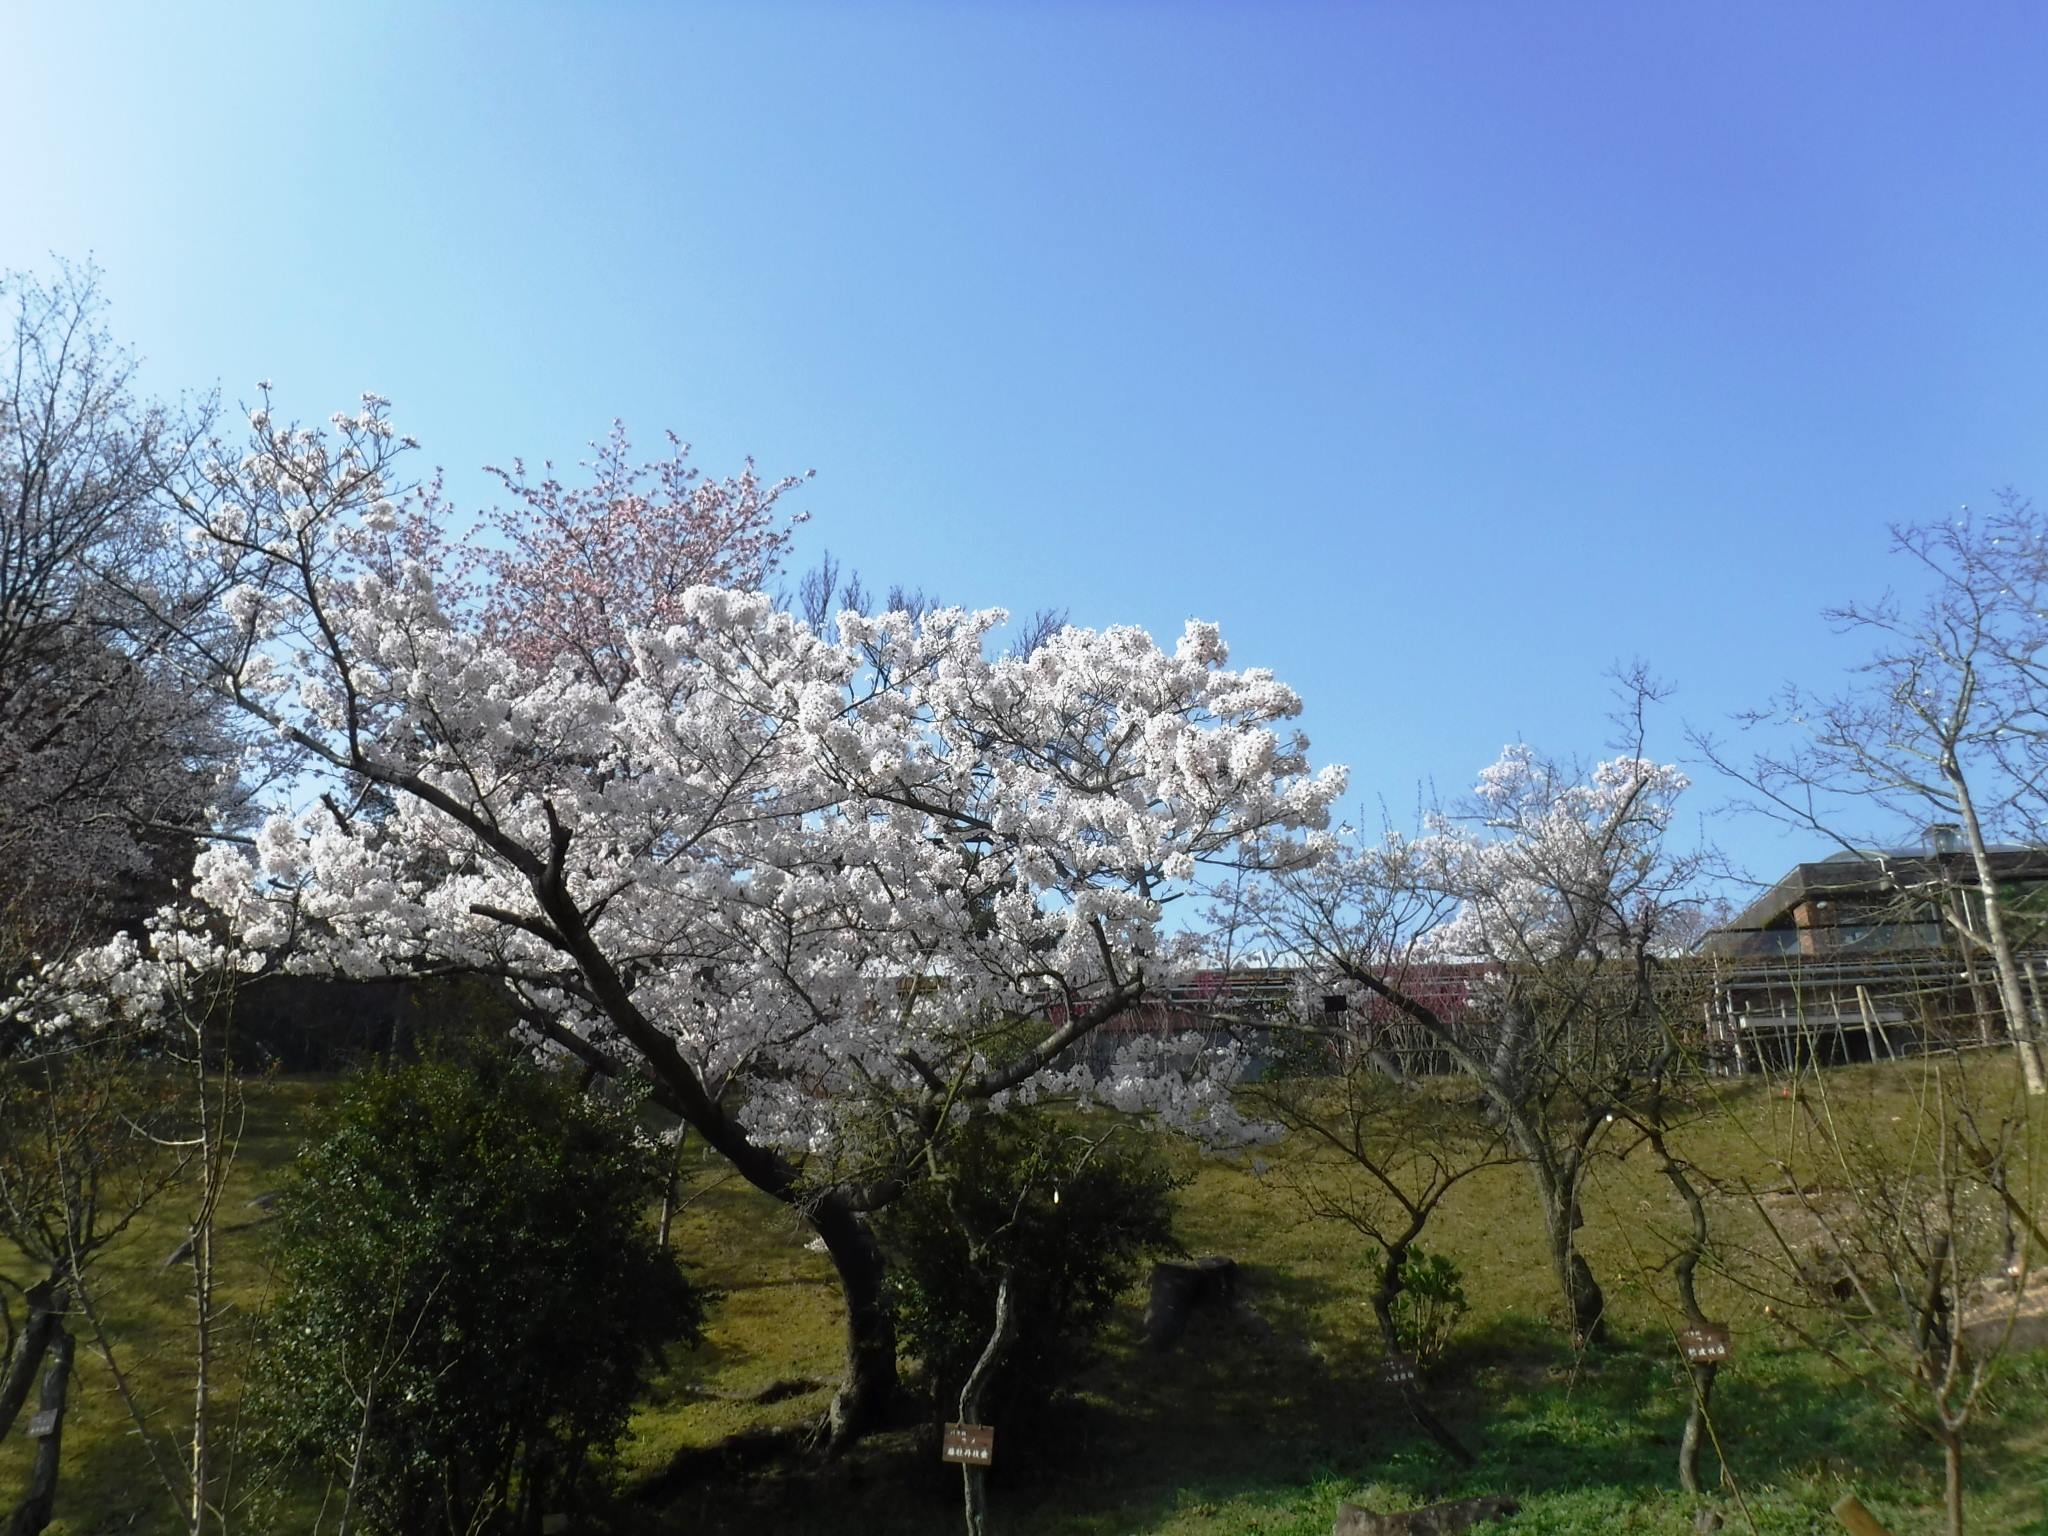 神戸市広報 こちらは須磨離宮公園の桜の様子 T Co D2b3gr1abh T Co Bstvddb2ha Twitter